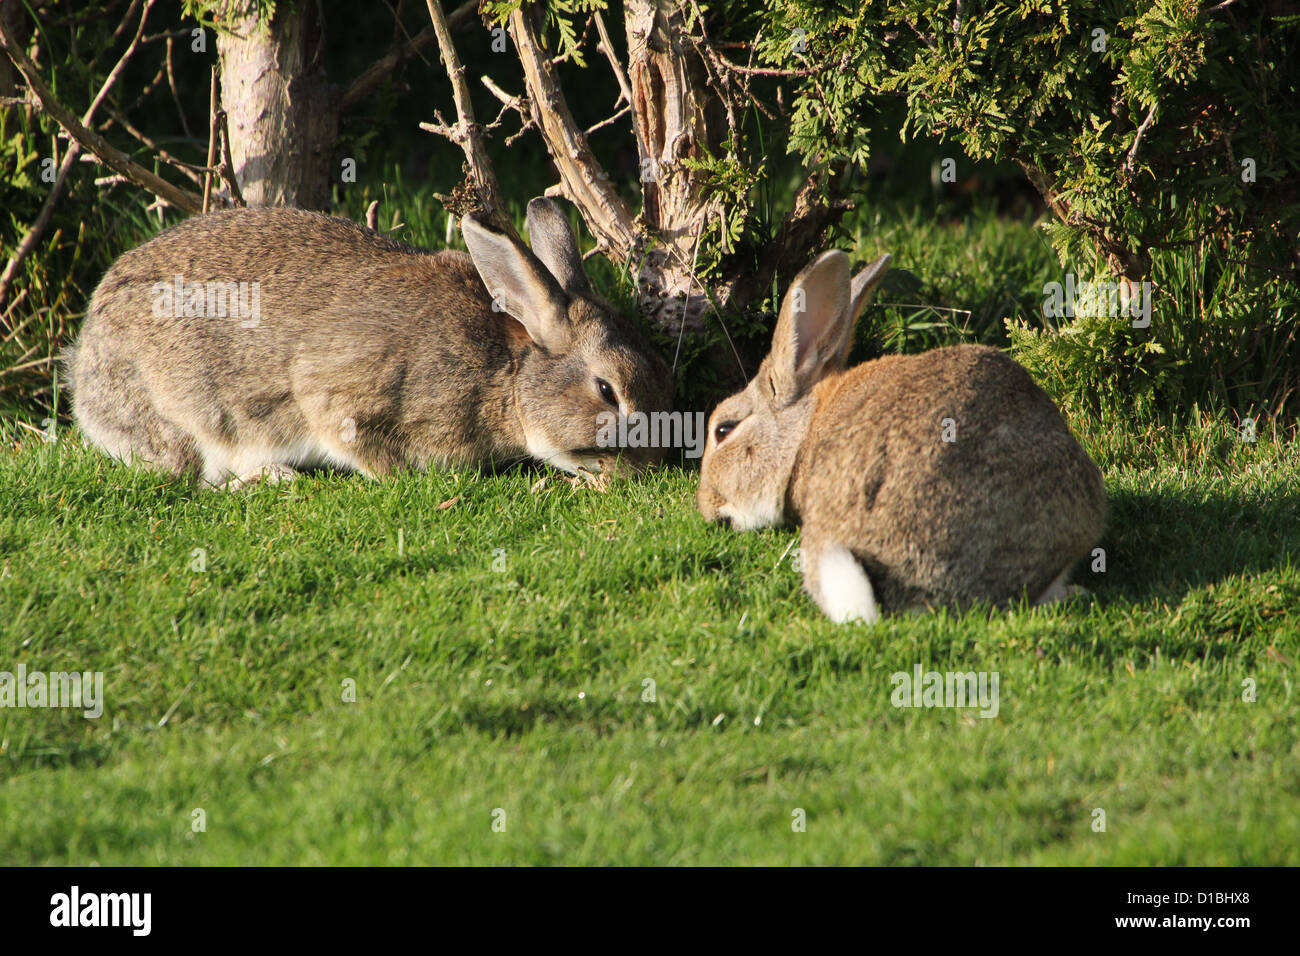 Paire de lapins sauvages Européen (Oryctolagus cuniculus) mange de l'herbe dans un pré Banque D'Images